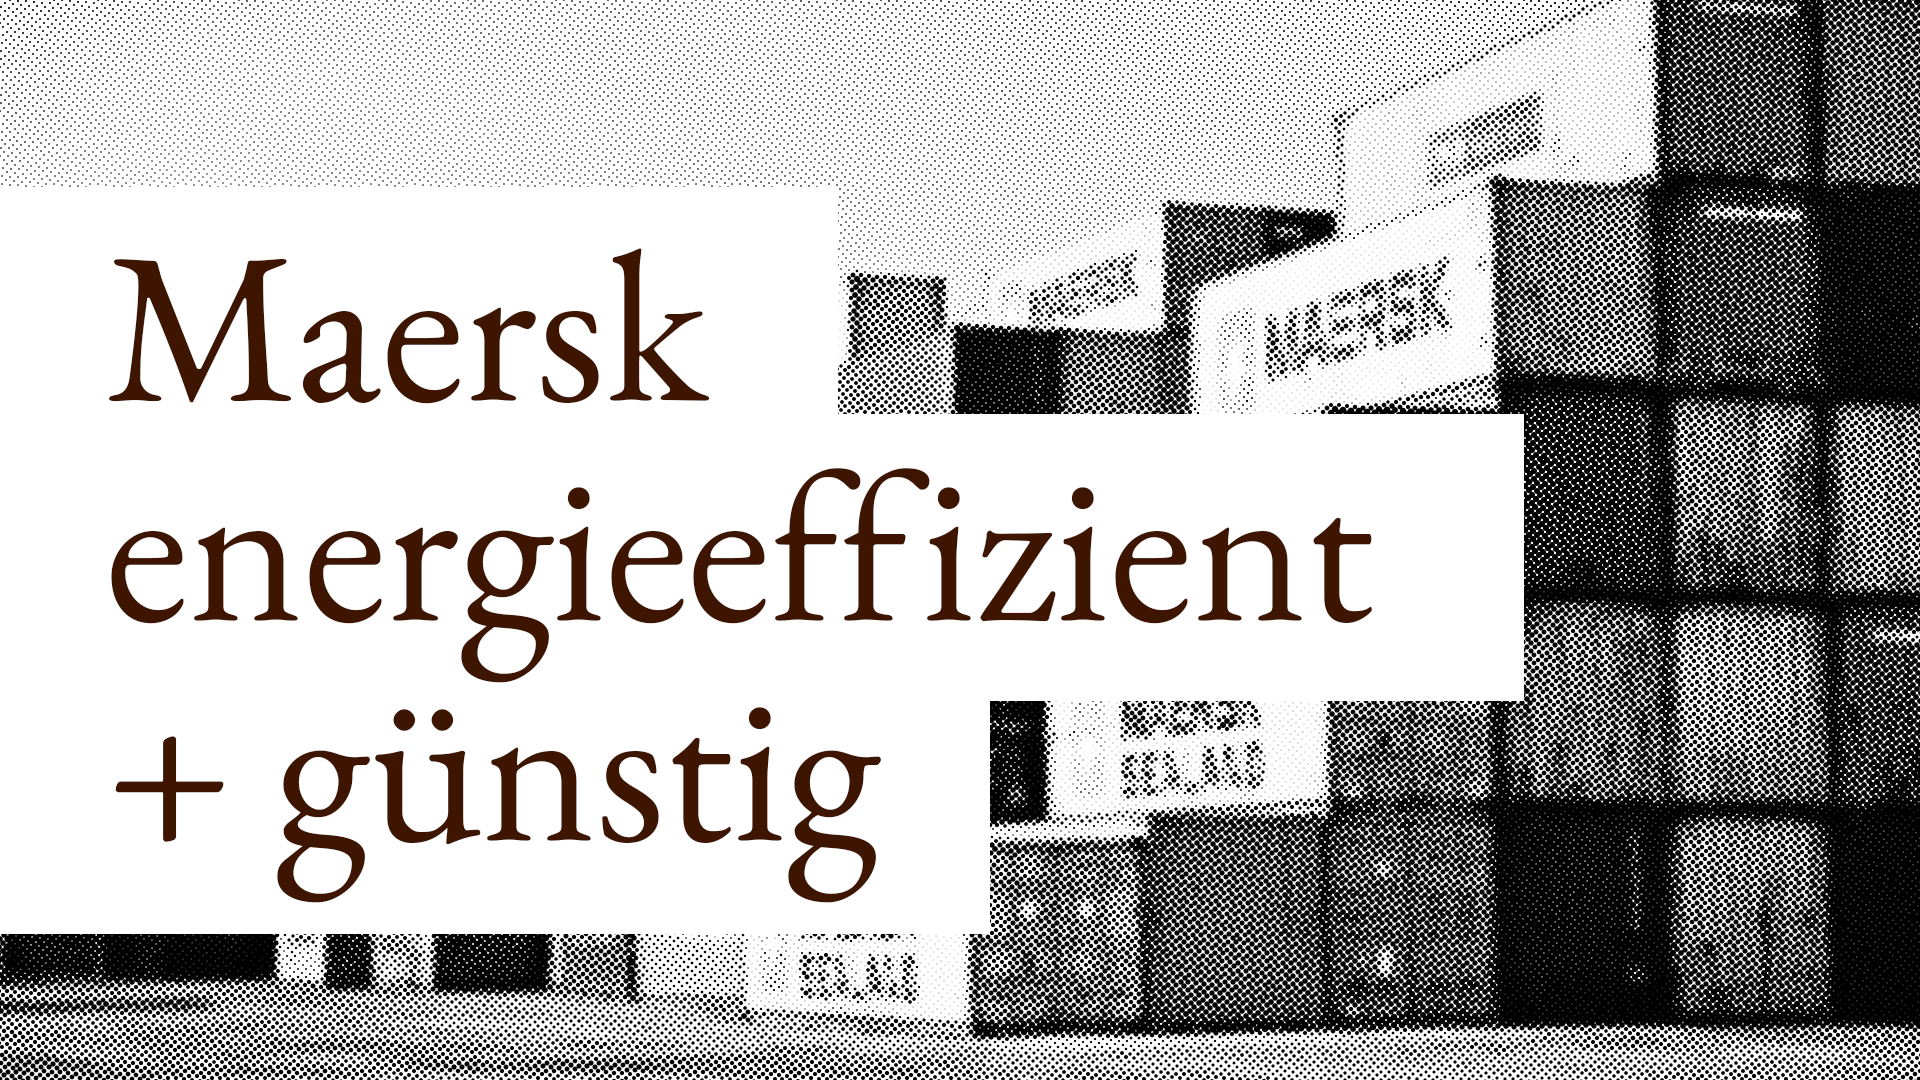 Maersk ist energieeffizient und die Aktie gerade günstig mit hoher Dividende